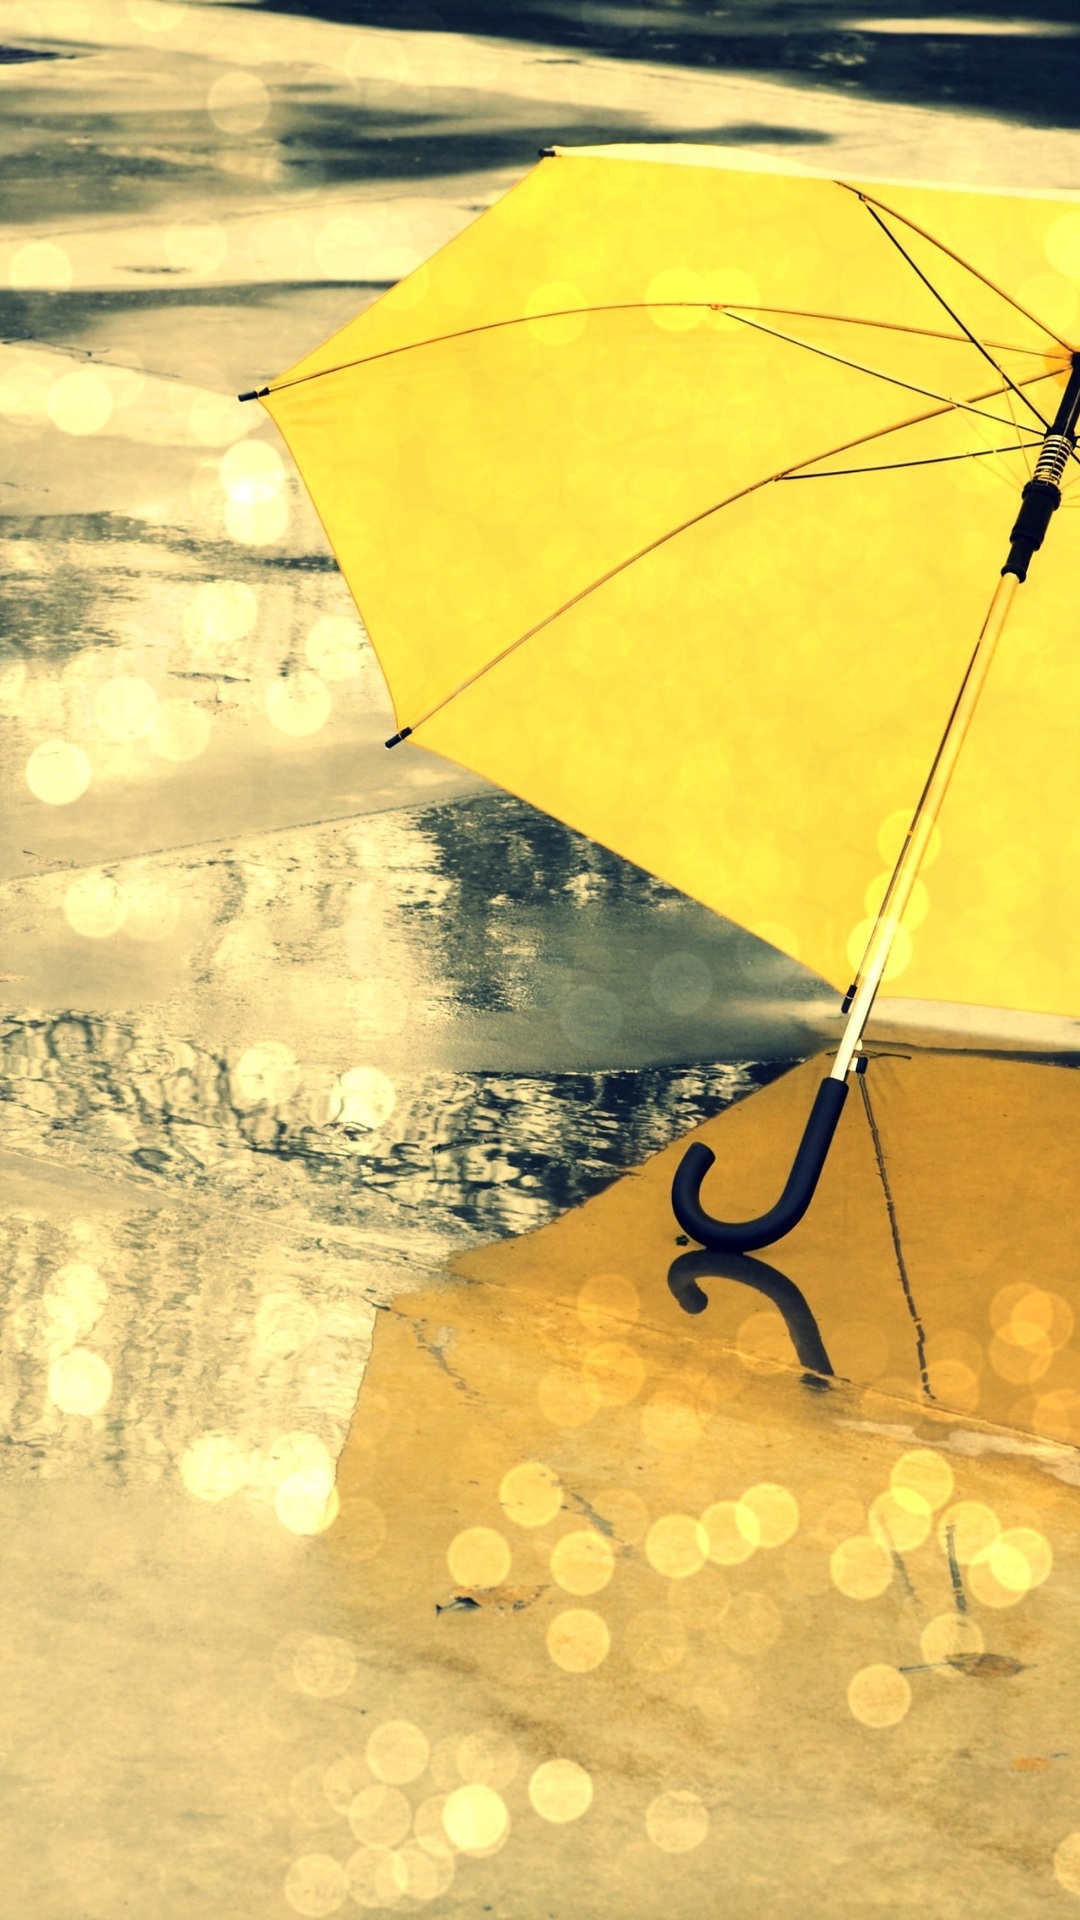 The Rain, Different, Umbrella, Yellow, Umbrella, Wet, - Beautiful Umbrella Wallpapers Hd - HD Wallpaper 